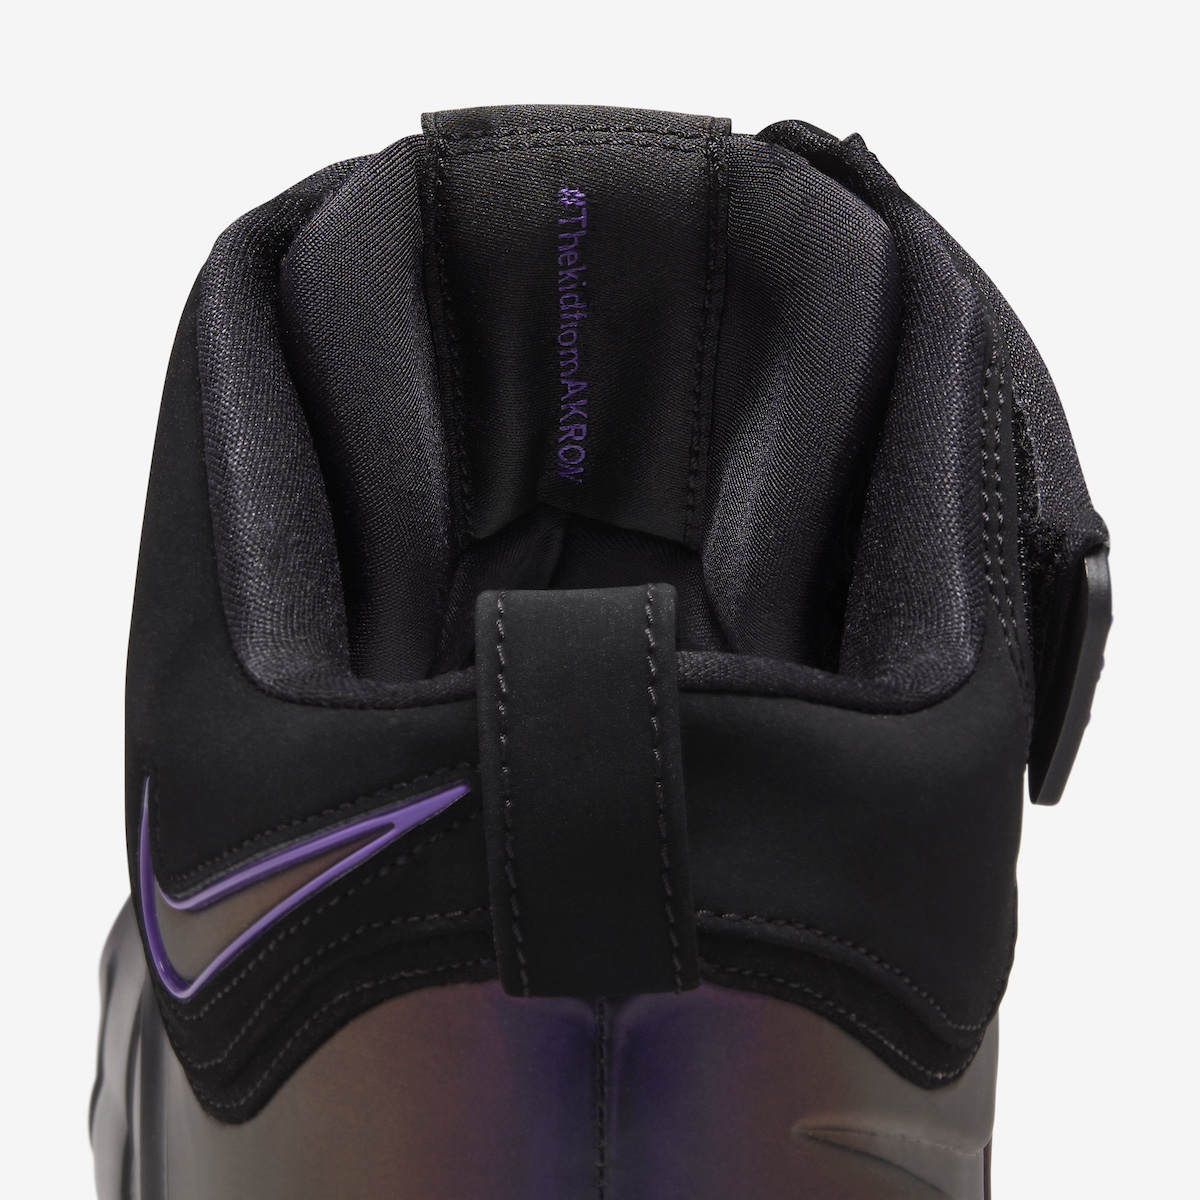 Nike-LeBron-4-Eggplant-Varsity-Purple-FN6251-001-9.jpeg